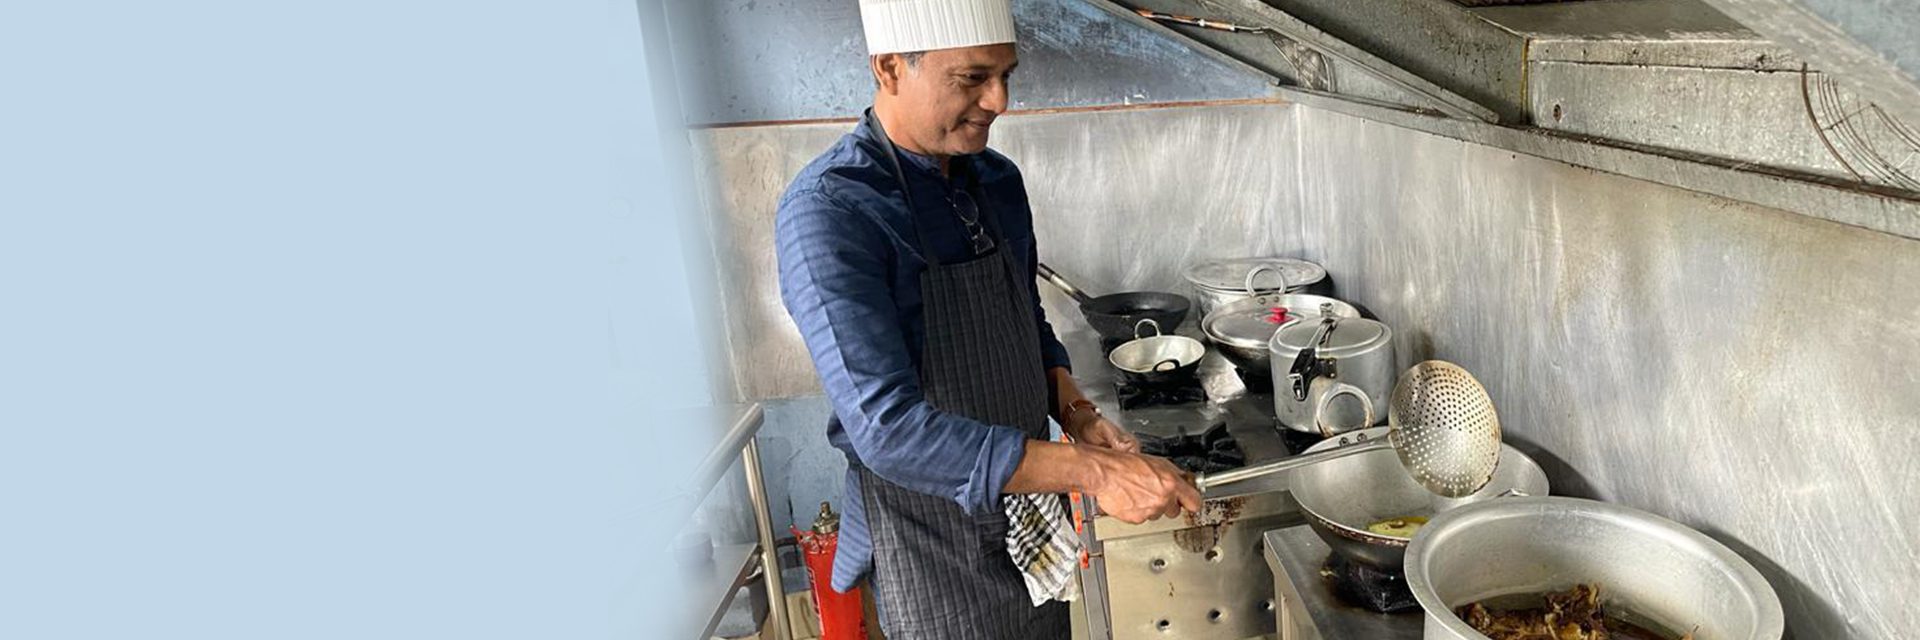 Cómo Adil Hussain es experto en juegos de rol, ya sea actuando o preparando una comida en ventanas emergentes seleccionadas